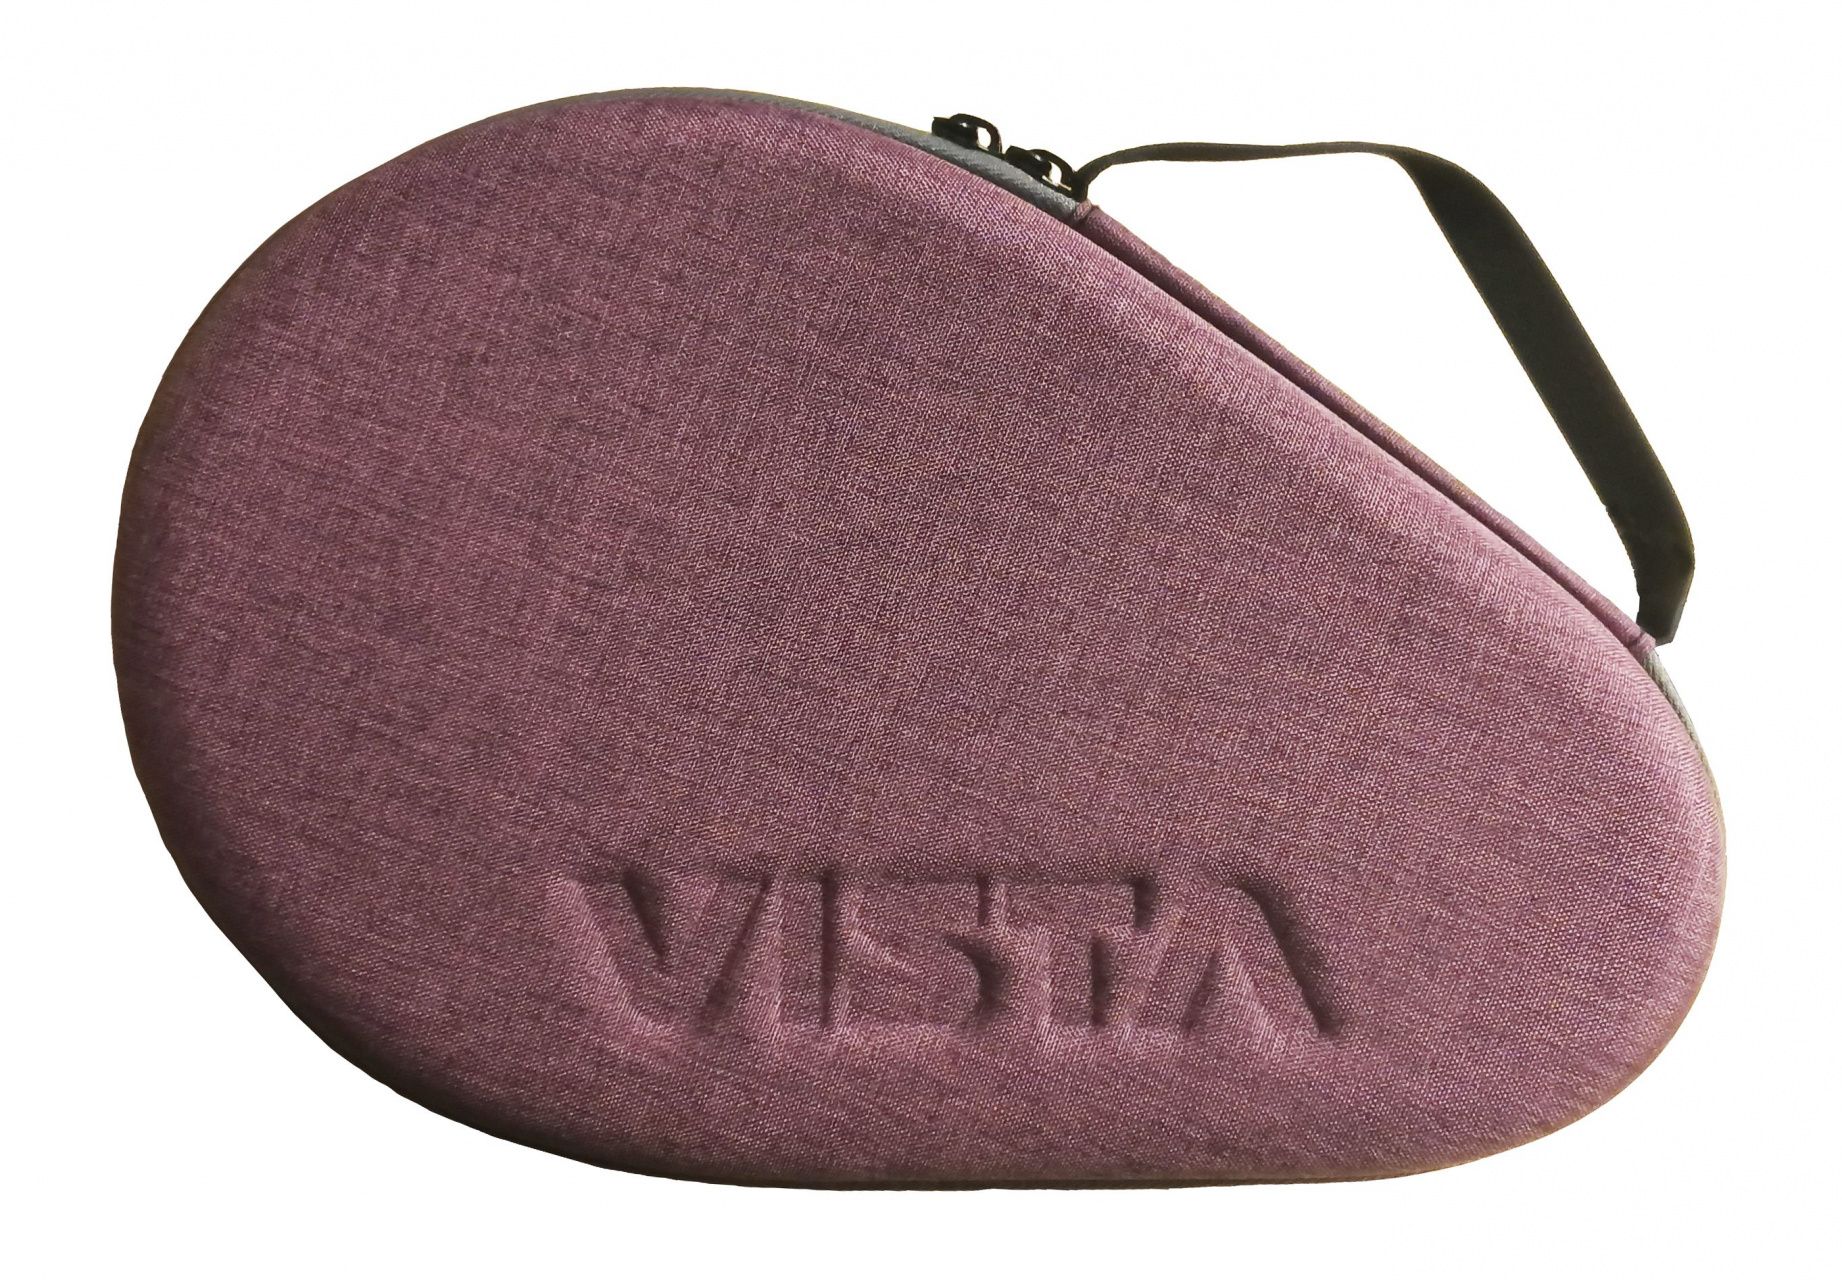 Чехол по форме ракетки Vista VRC